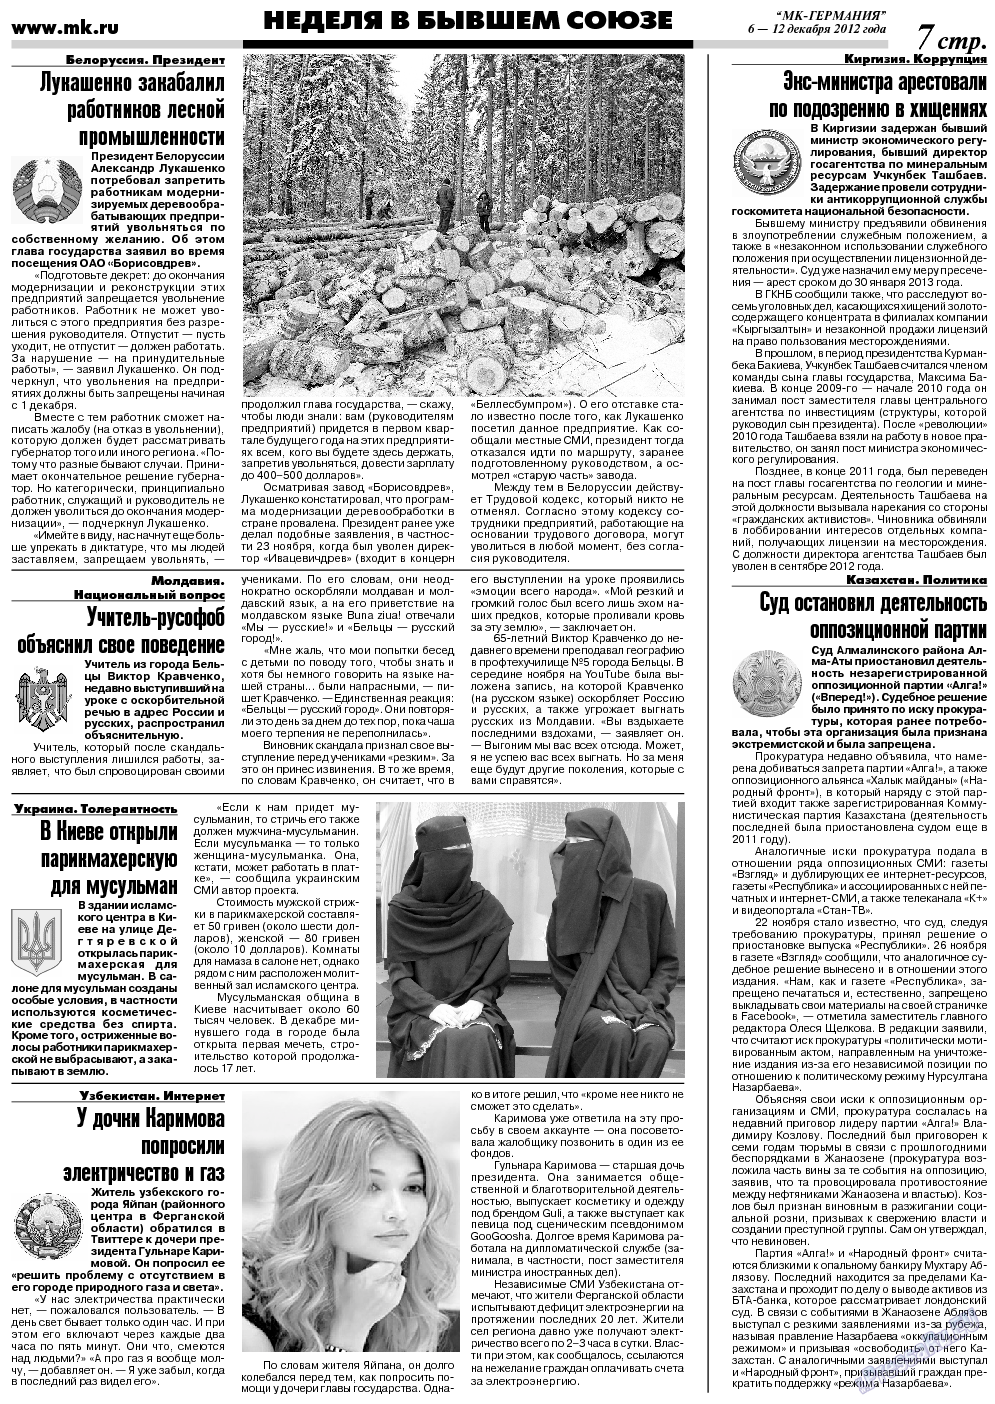 МК-Германия (газета). 2012 год, номер 49, стр. 7